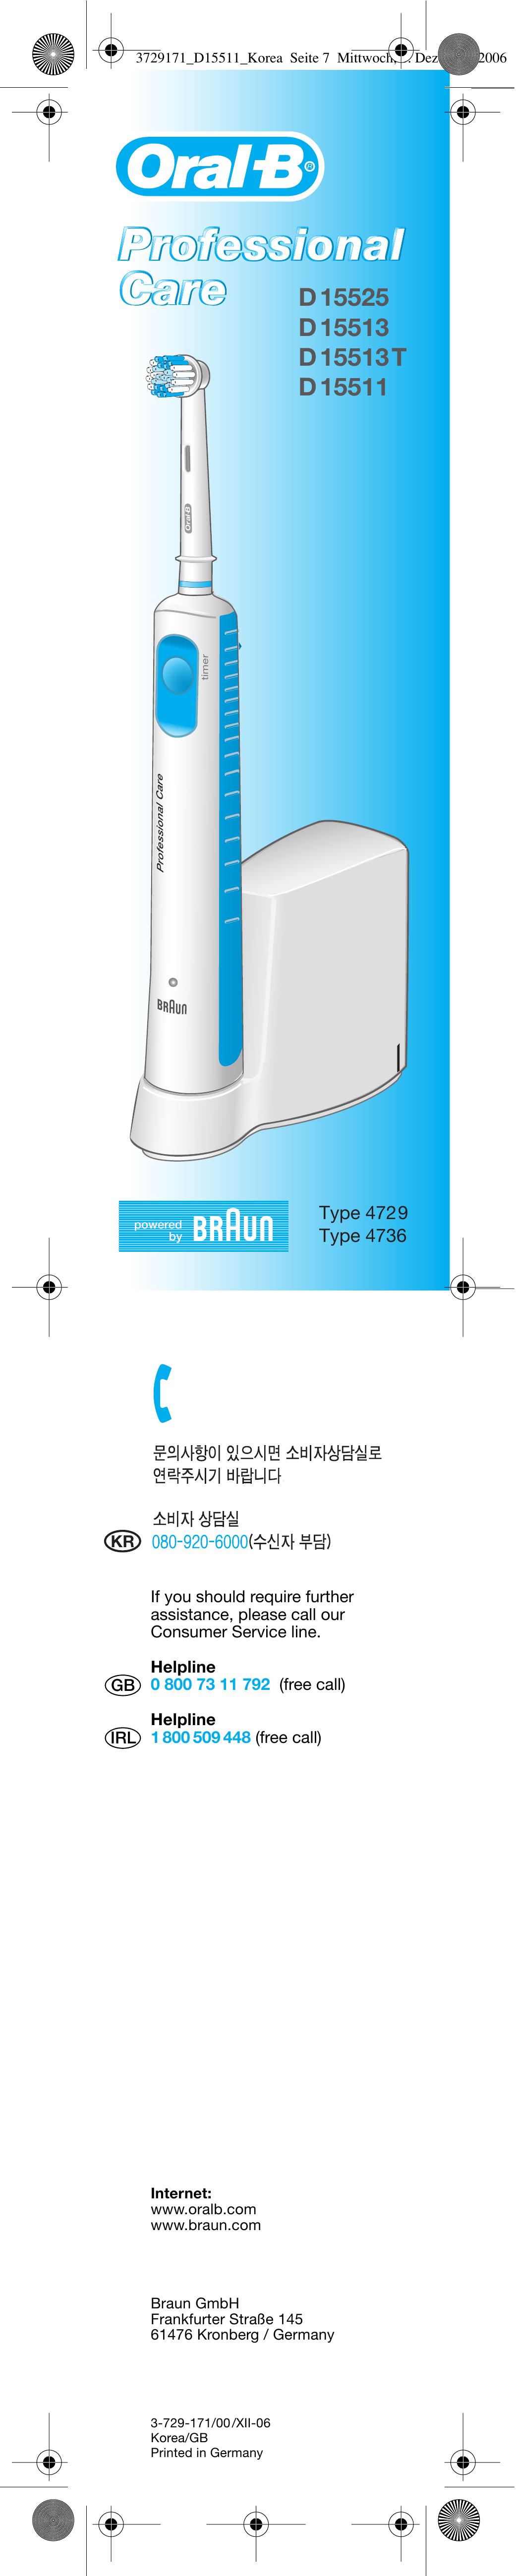 Braun D15511 Electric Toothbrush User Manual